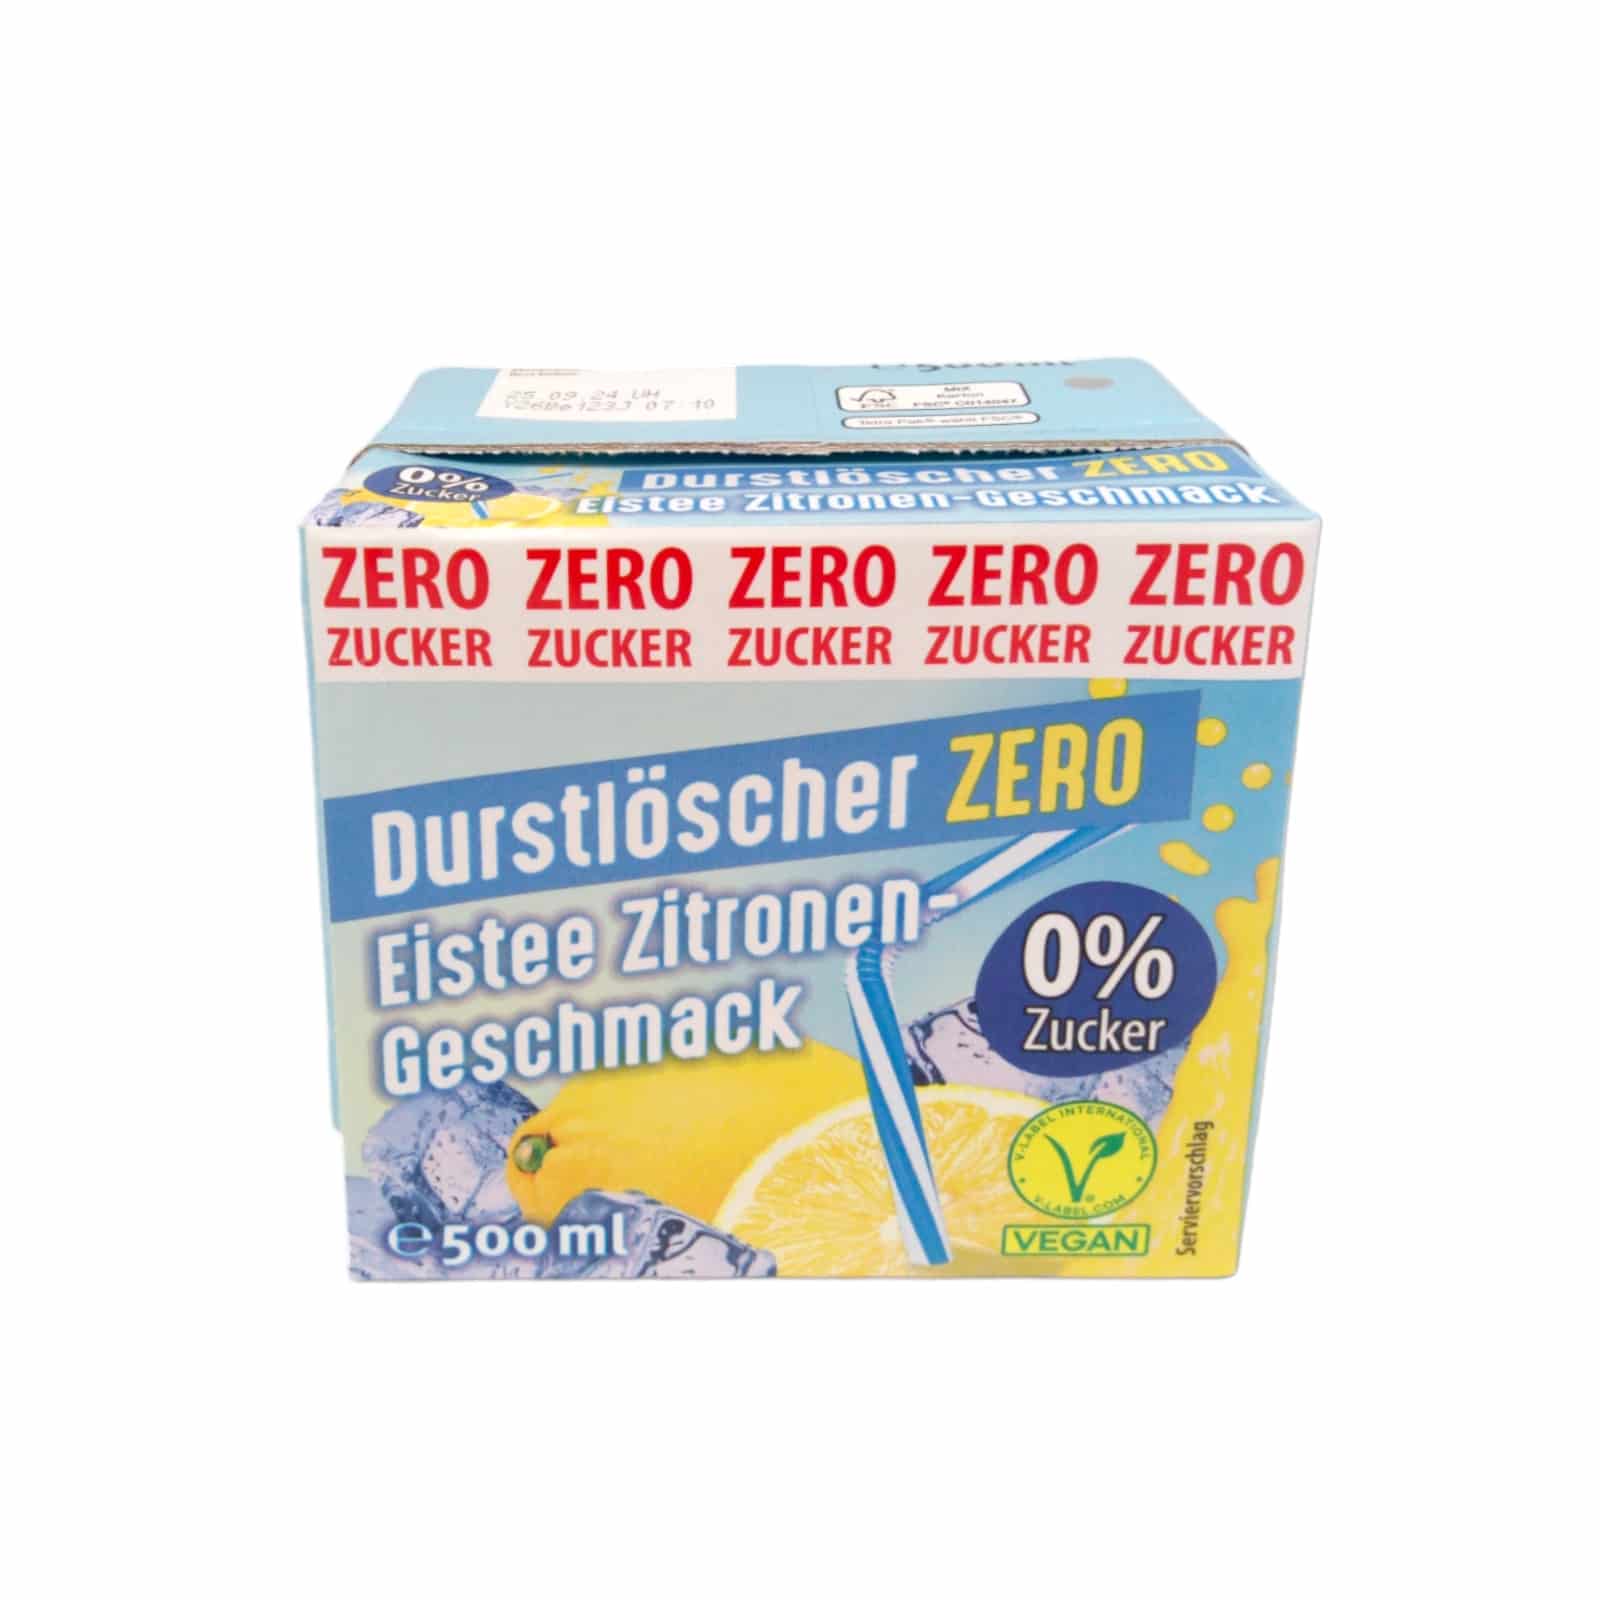 Durstlöscher Zitrone zero 0,5l